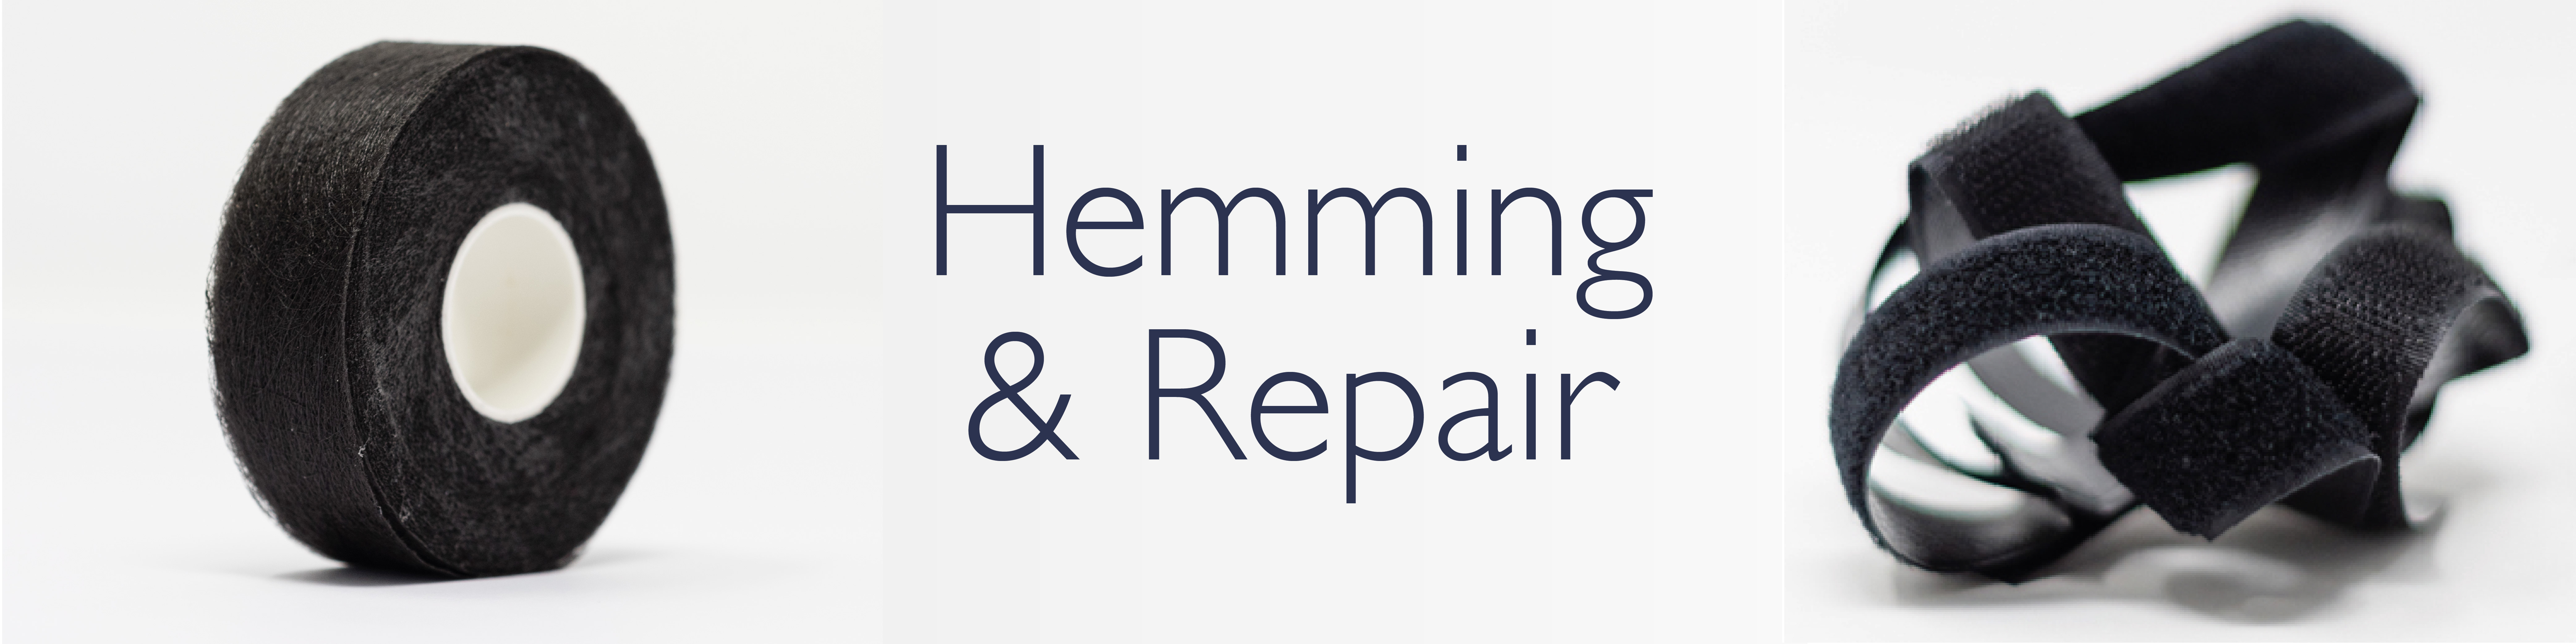 hemming & repairing